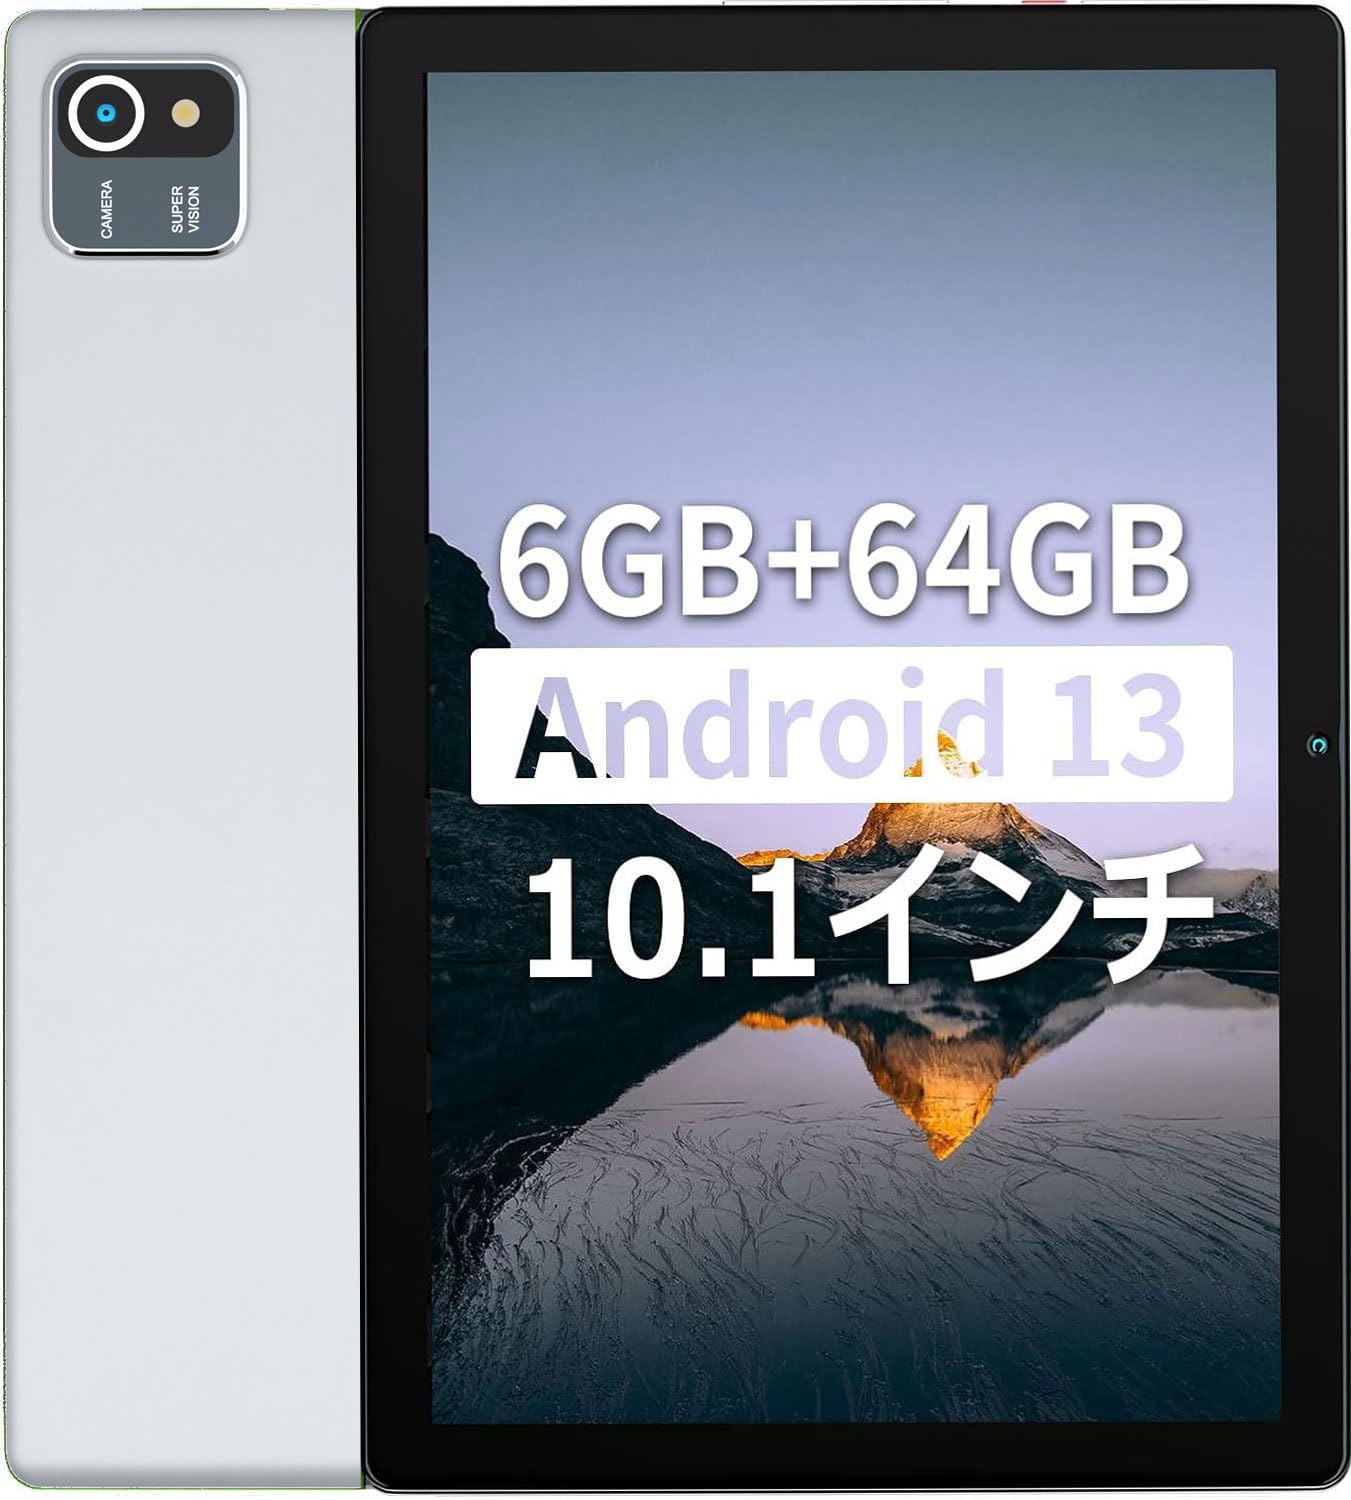 【6GB RAM+64GB ROM Android 13】HiGrace タブレット 10インチ wi-fiモデル 1TB拡張可能 IPS 1280*800解像度 画面 5000mAh容量バッテリー 8MP/5MPカメラ 2.4G wifi Bluetooth GMS認証 Type-C充…